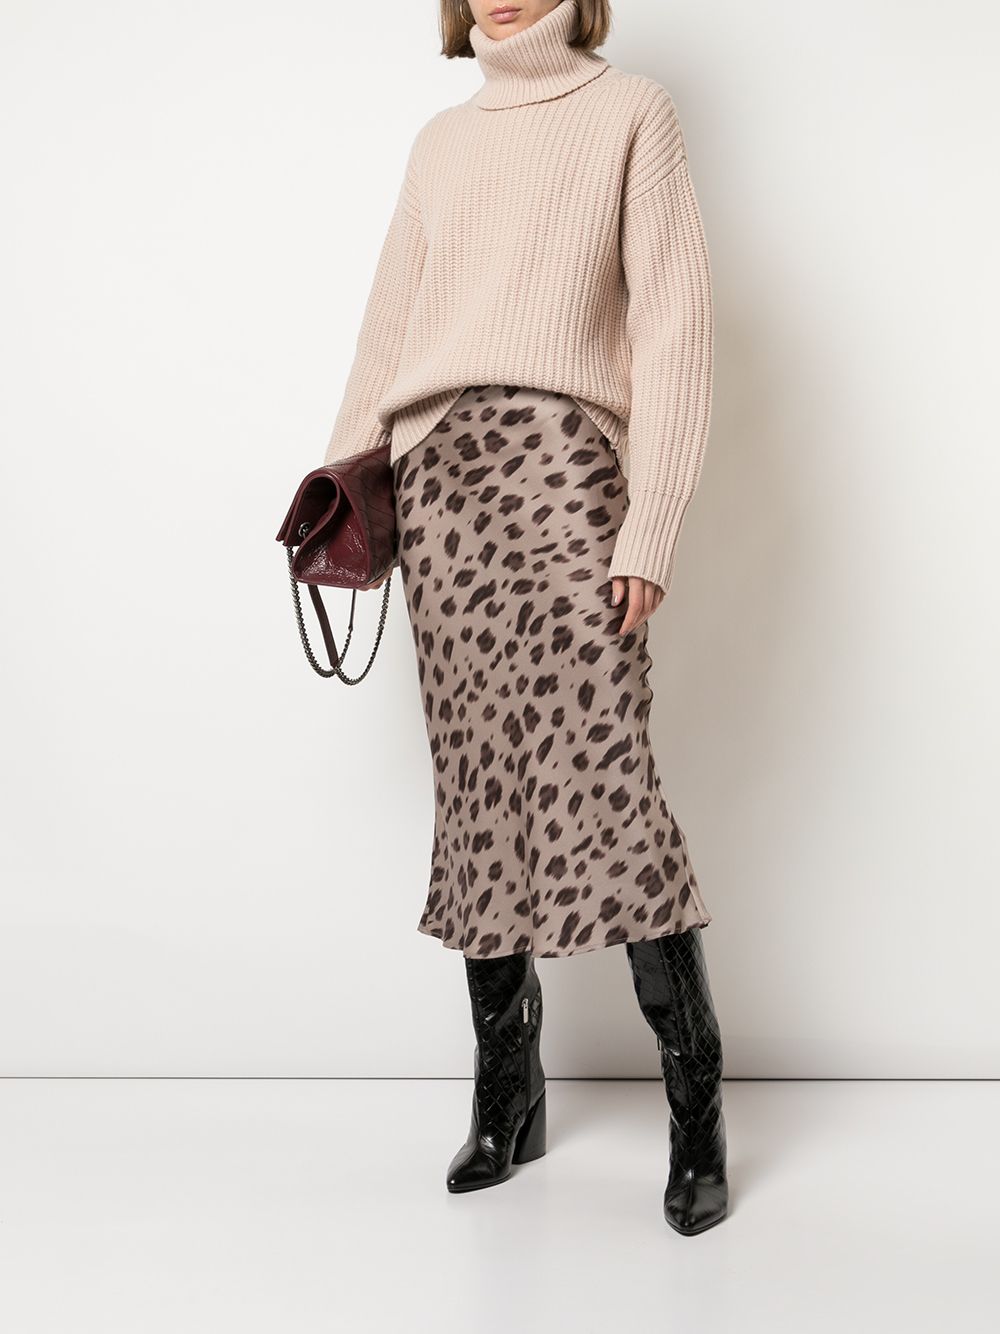 фото Anine bing юбка миди с леопардовым принтом